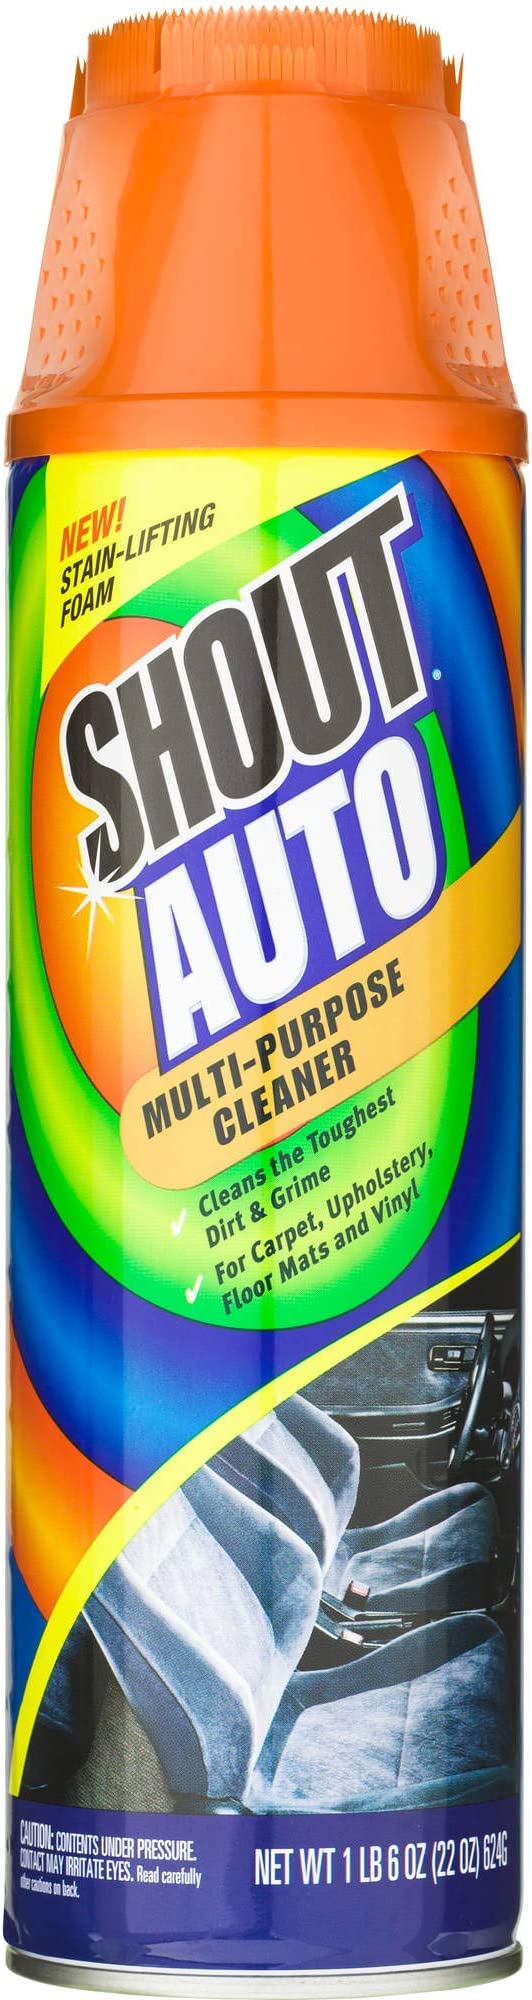 Shout Auto Multi-Purpose Interior Cleaner, Stain Remover 22 oz (1)